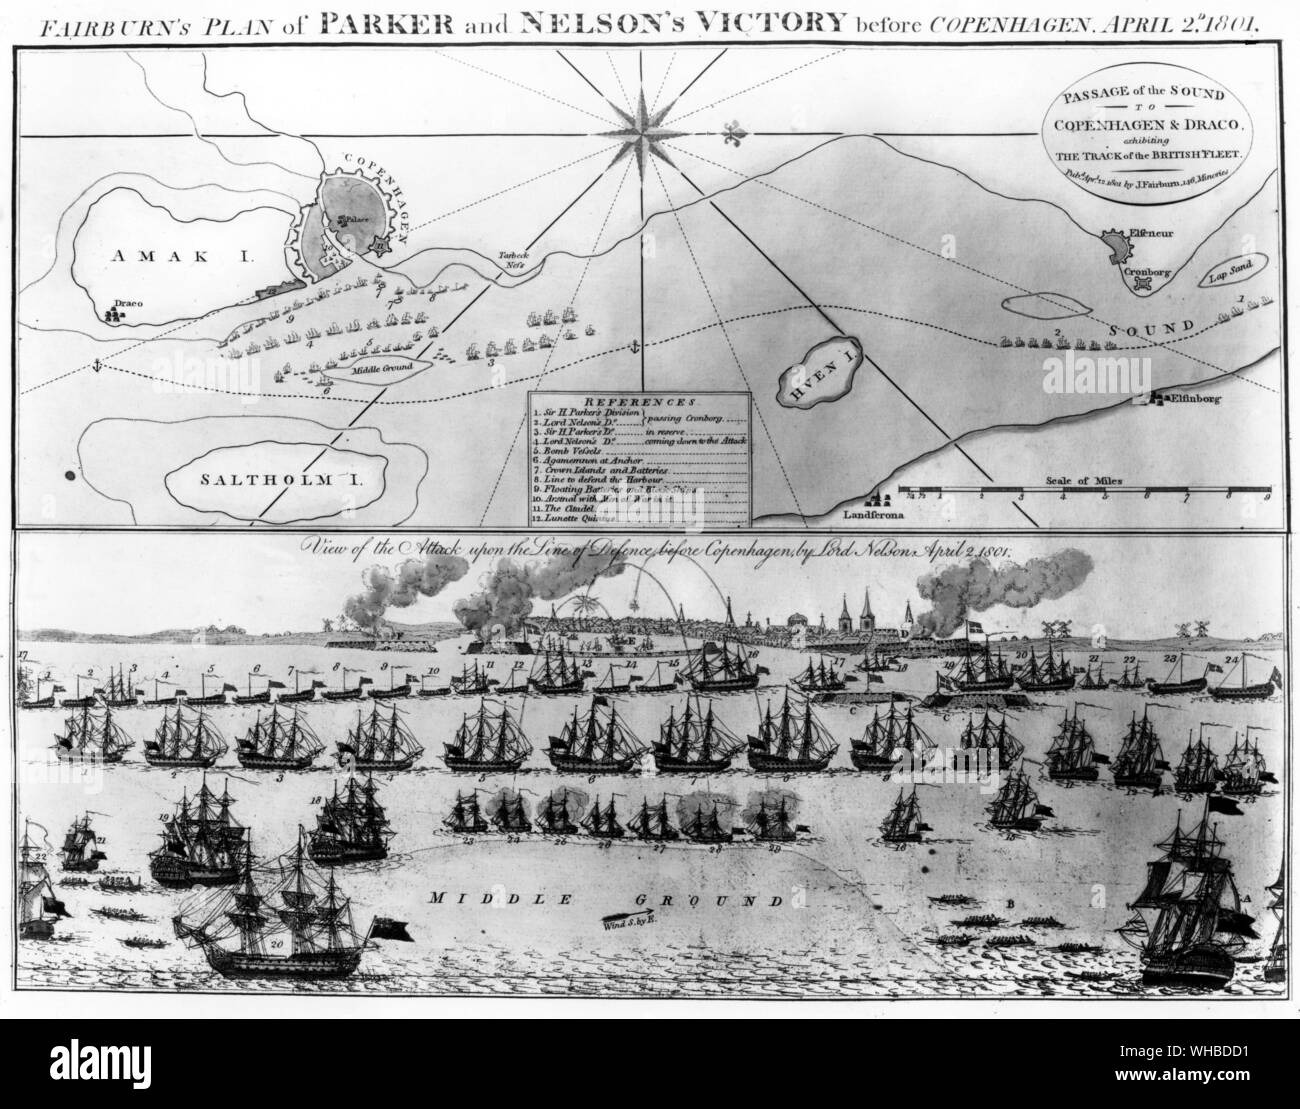 Fairburn piano di Parker e Nelson la vittoria davanti a Copenaghen il 2 aprile 1801.. Vista l'attacco alla linea di difesa prima di Copenaghen da Lord Nelson . Foto Stock